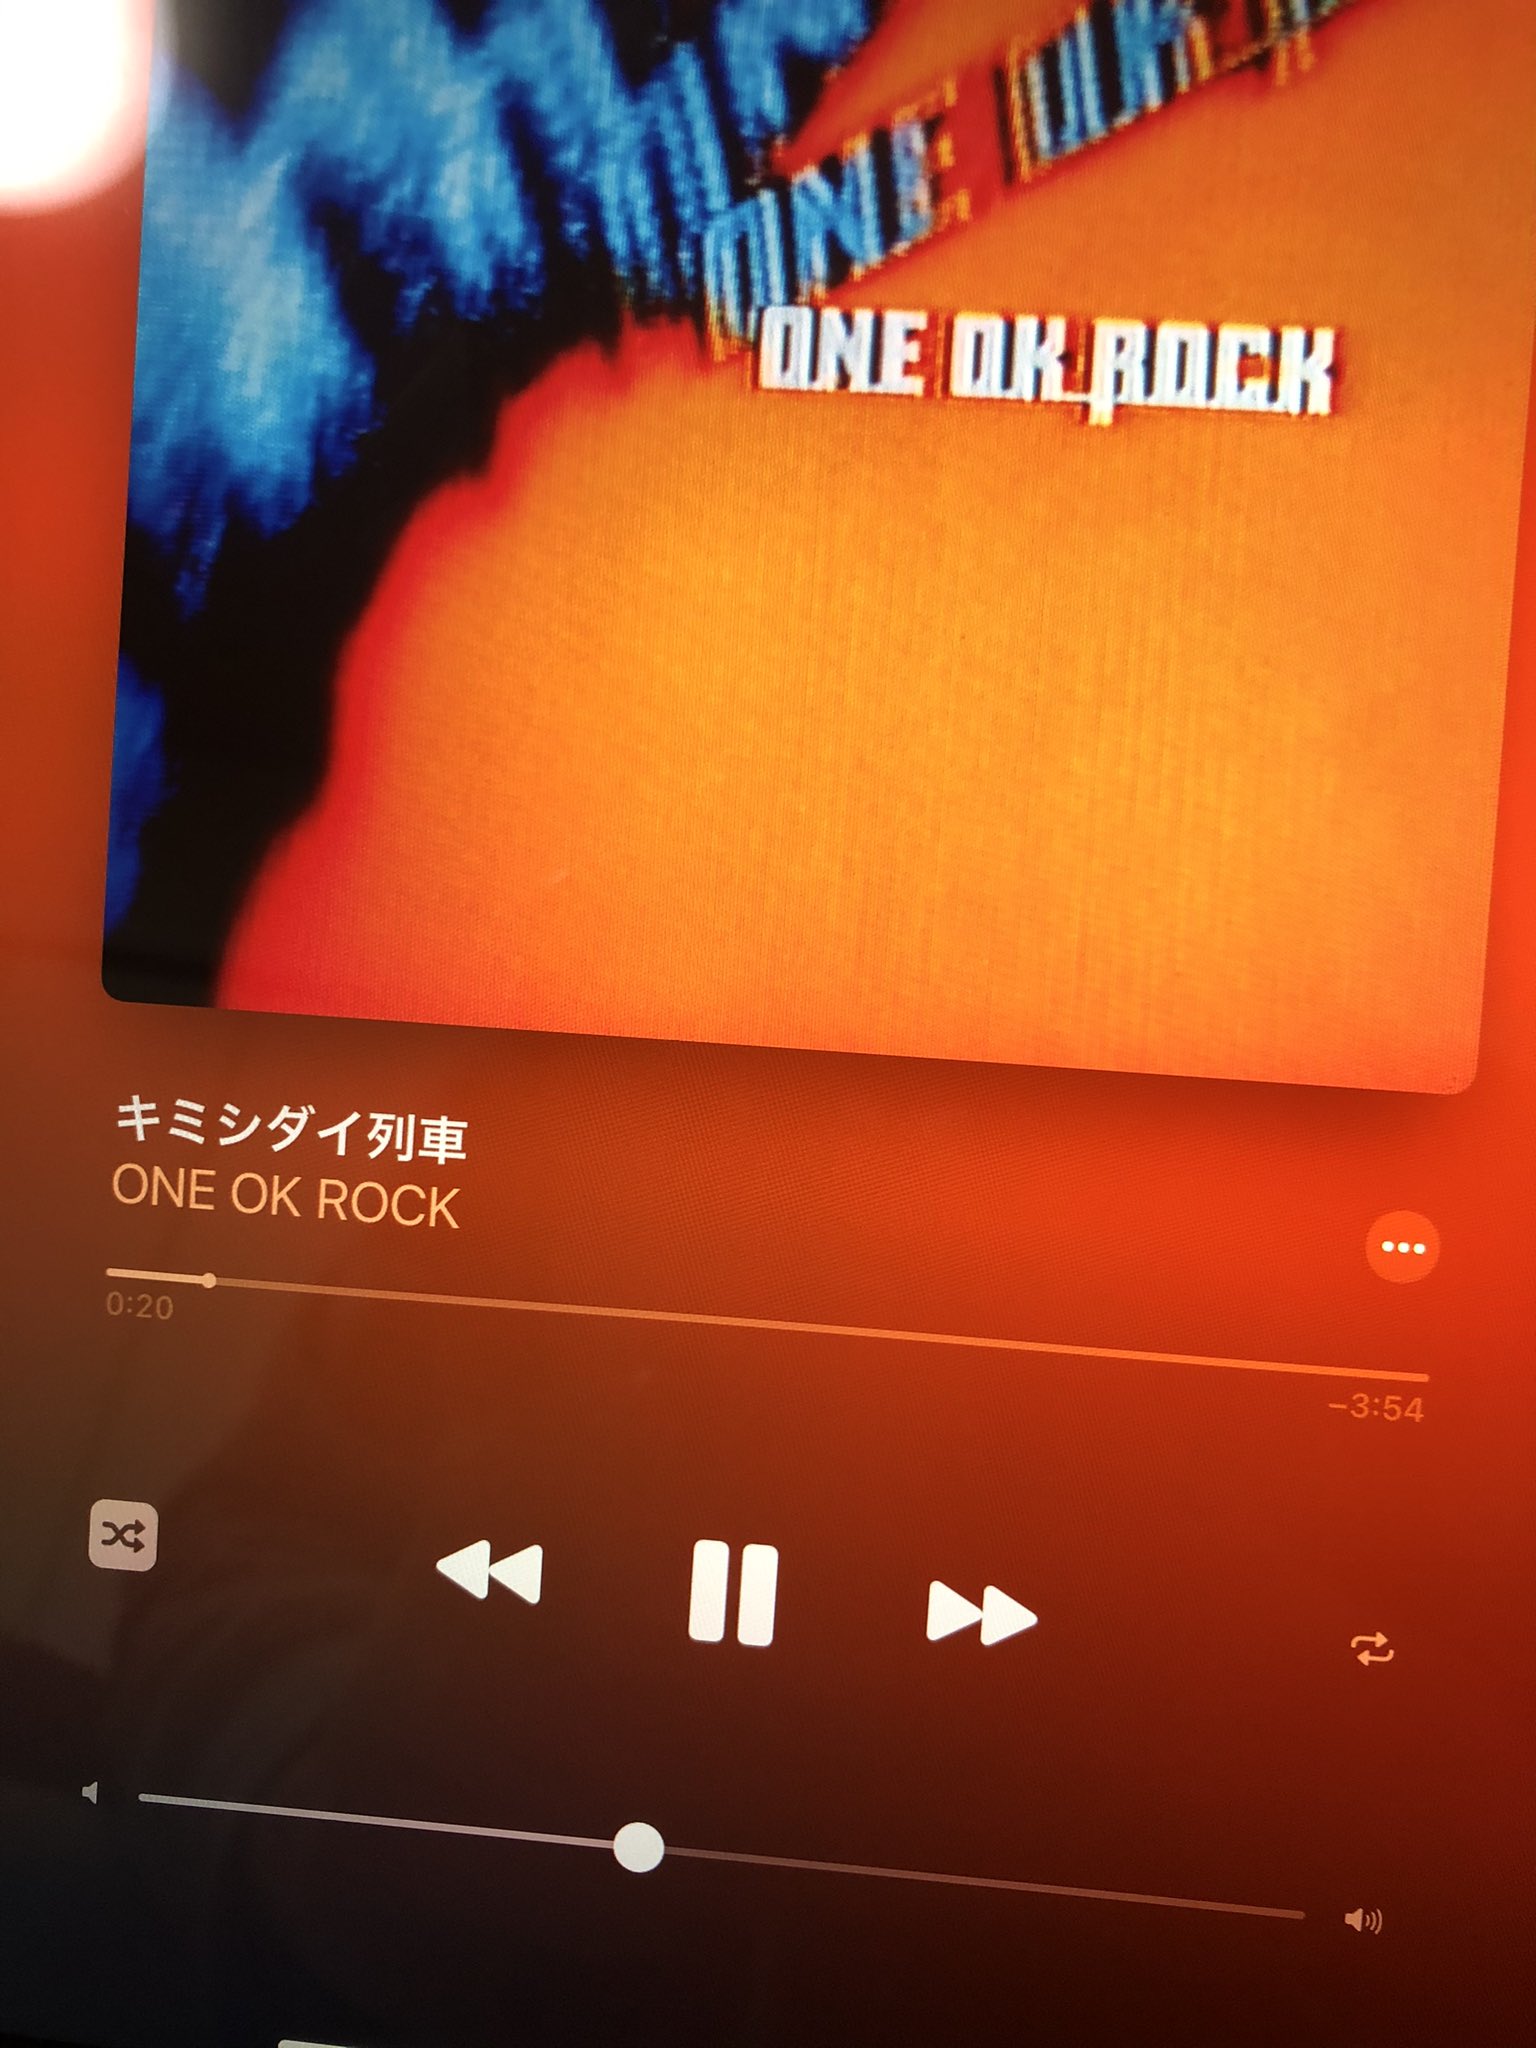 りゅーp キミシダイ列車 One Ok Rock 個人的に残響リファレンスはワンオクのアルバムで1番好きだったり この曲にはよく勇気づけられております 曲調も歌詞もほんとにカッコいい T Co Fdrslroa8i Twitter